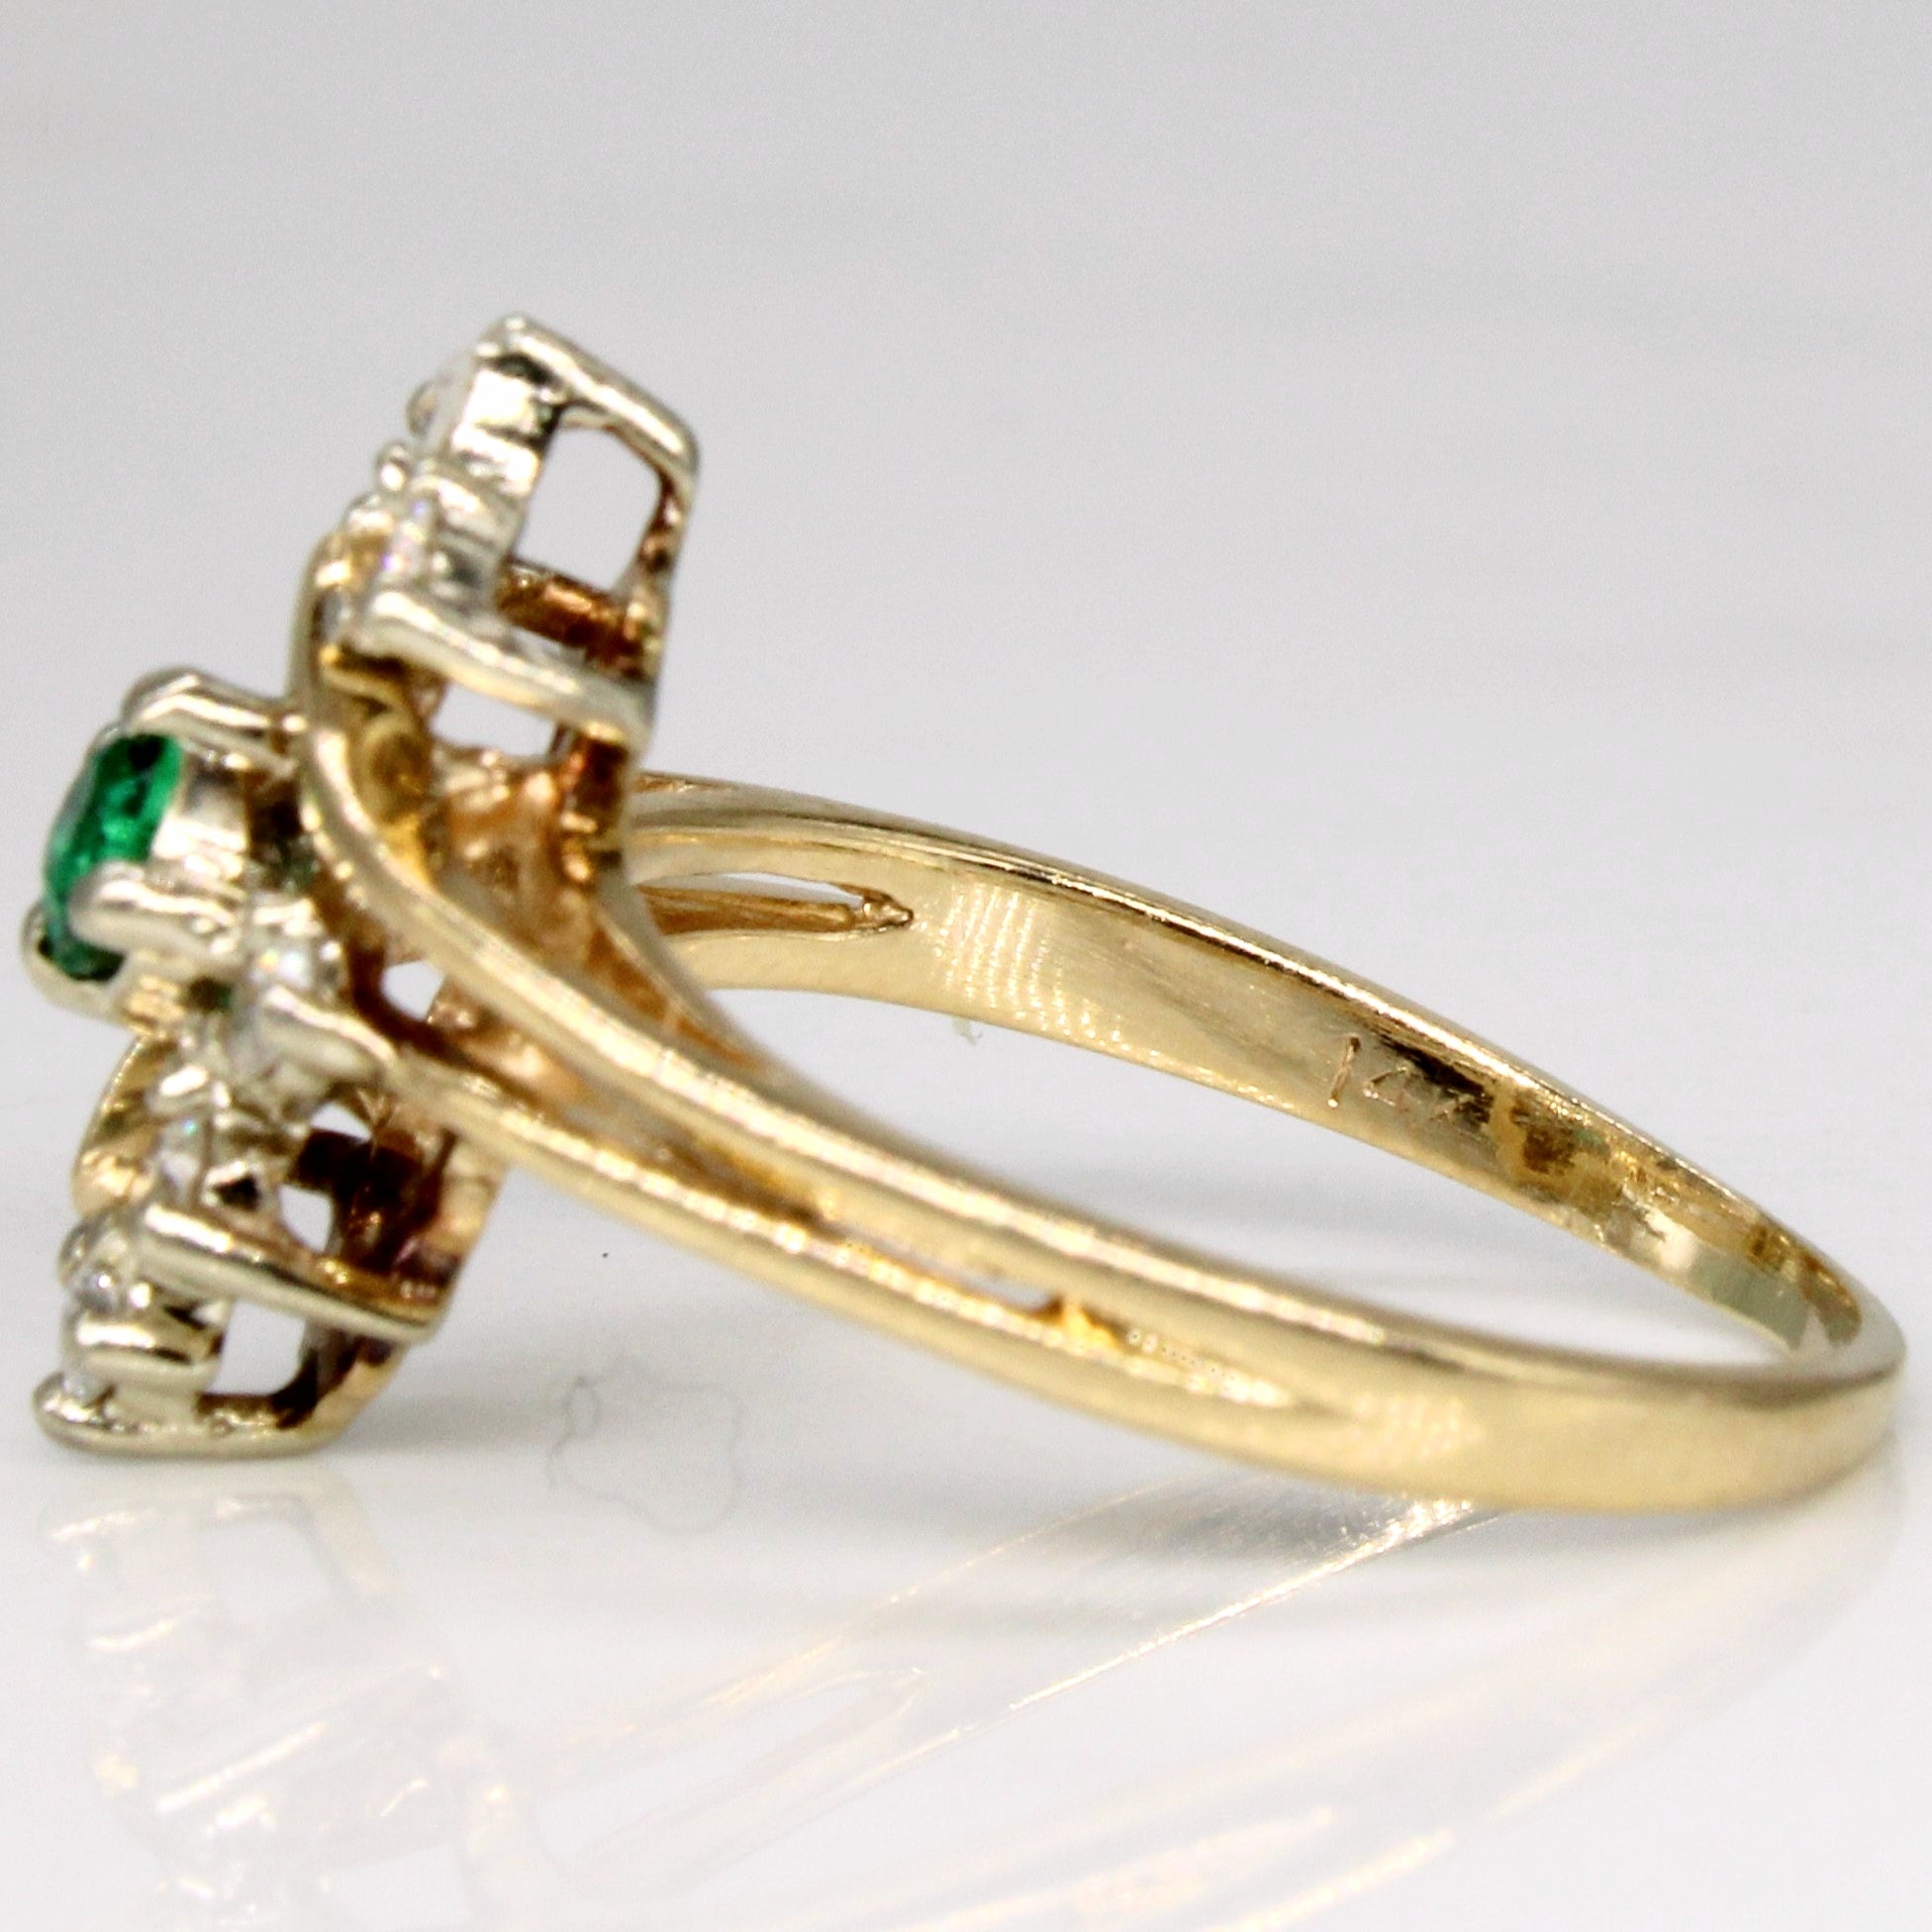 Diamond & Emerald Ring | 0.12ctw, 0.10ct | SZ 4.5 |